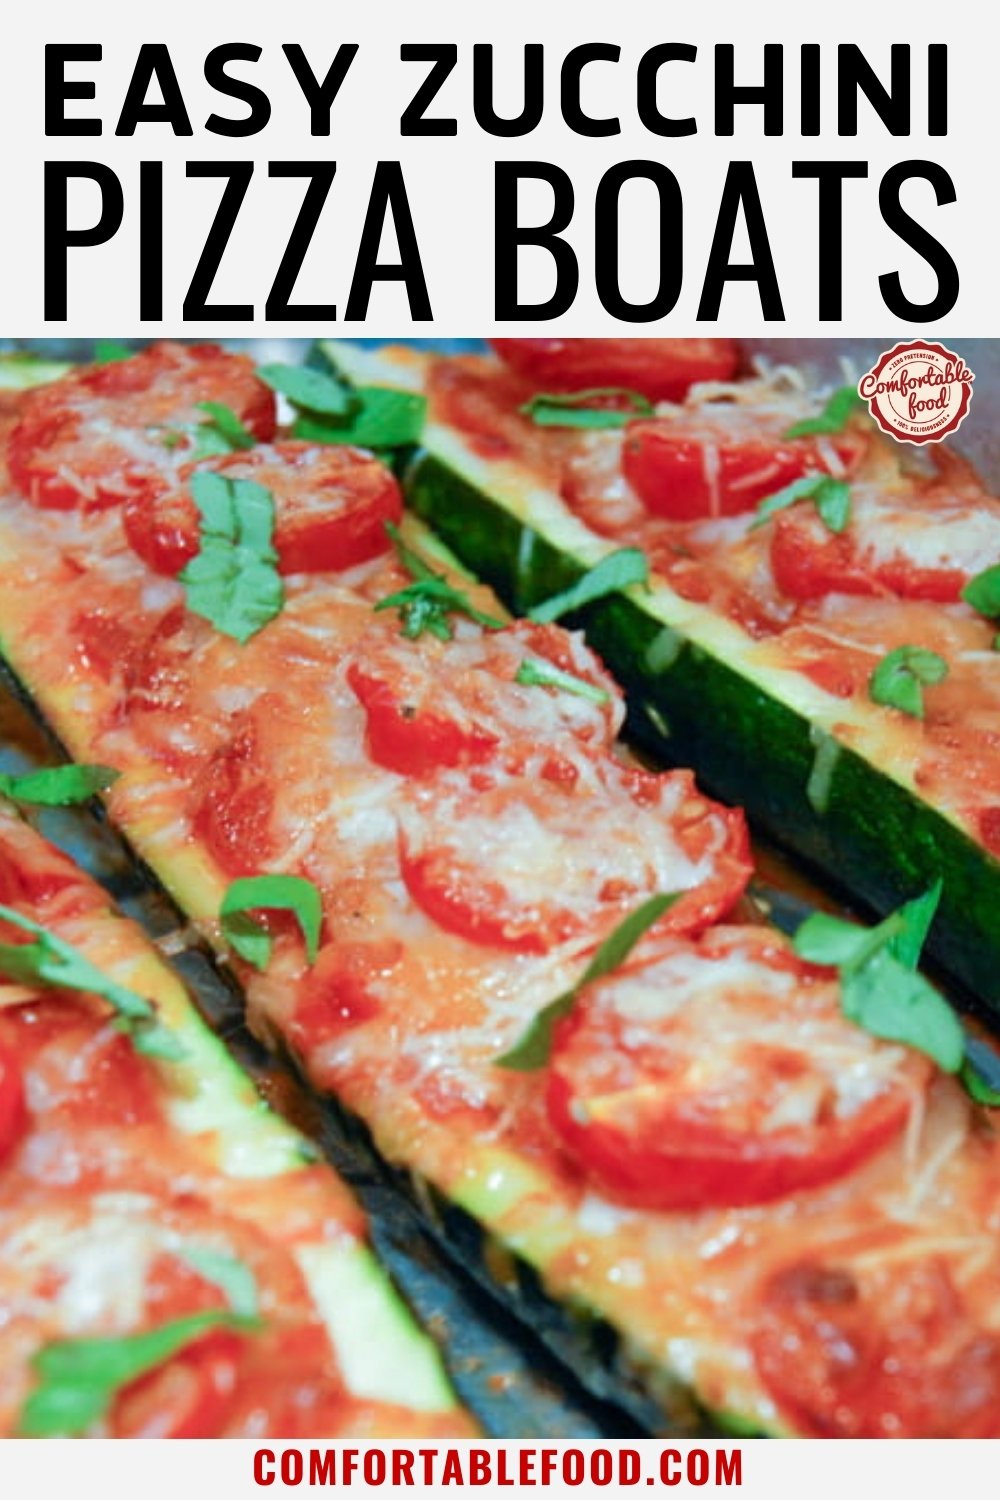 Zucchini pizza boat